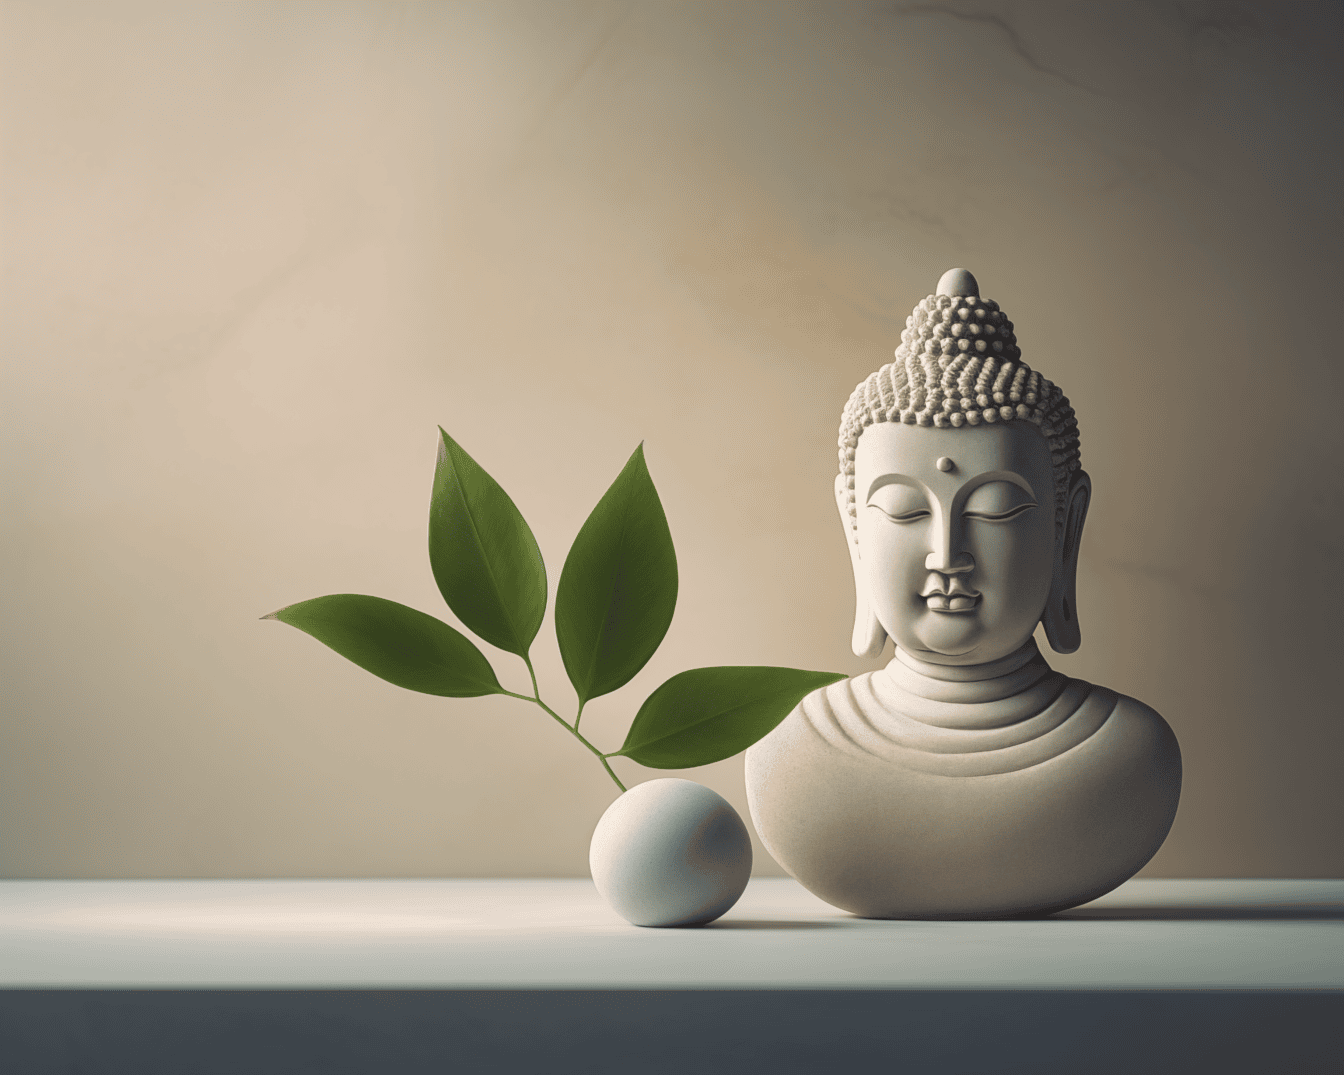 Patung buddha putih keramik dalam meditasi damai di samping batu bundar dengan daun